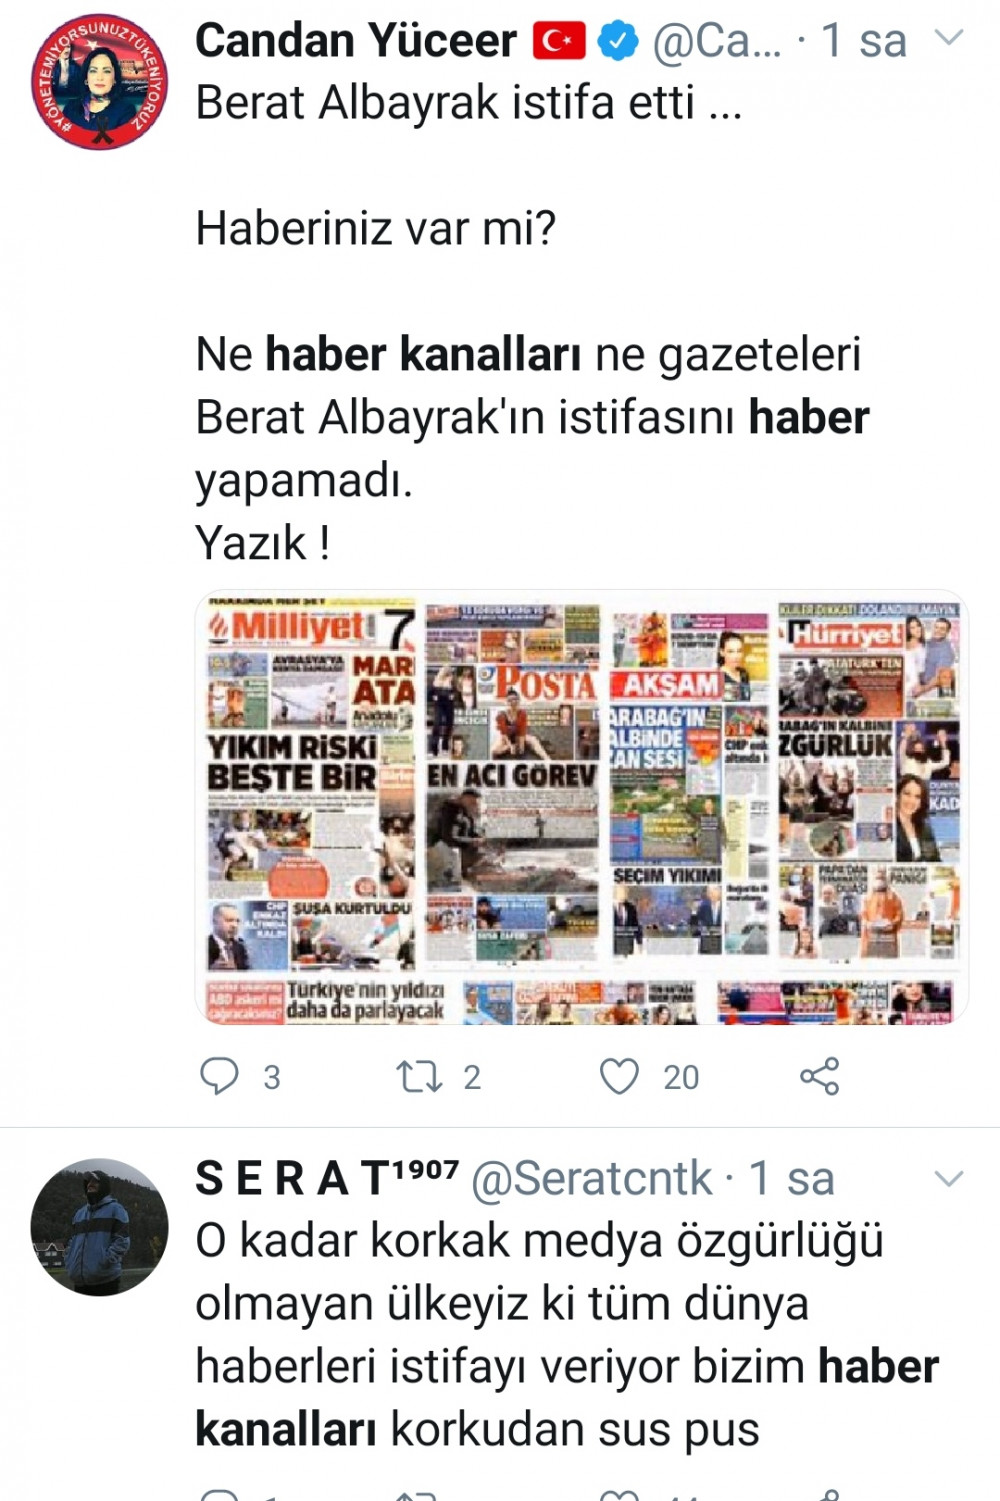 Korkudan Berat Albayrak'ın istifasını görmeyen haber kanalları ve gazeteler alay konusu oldu - Resim: 4